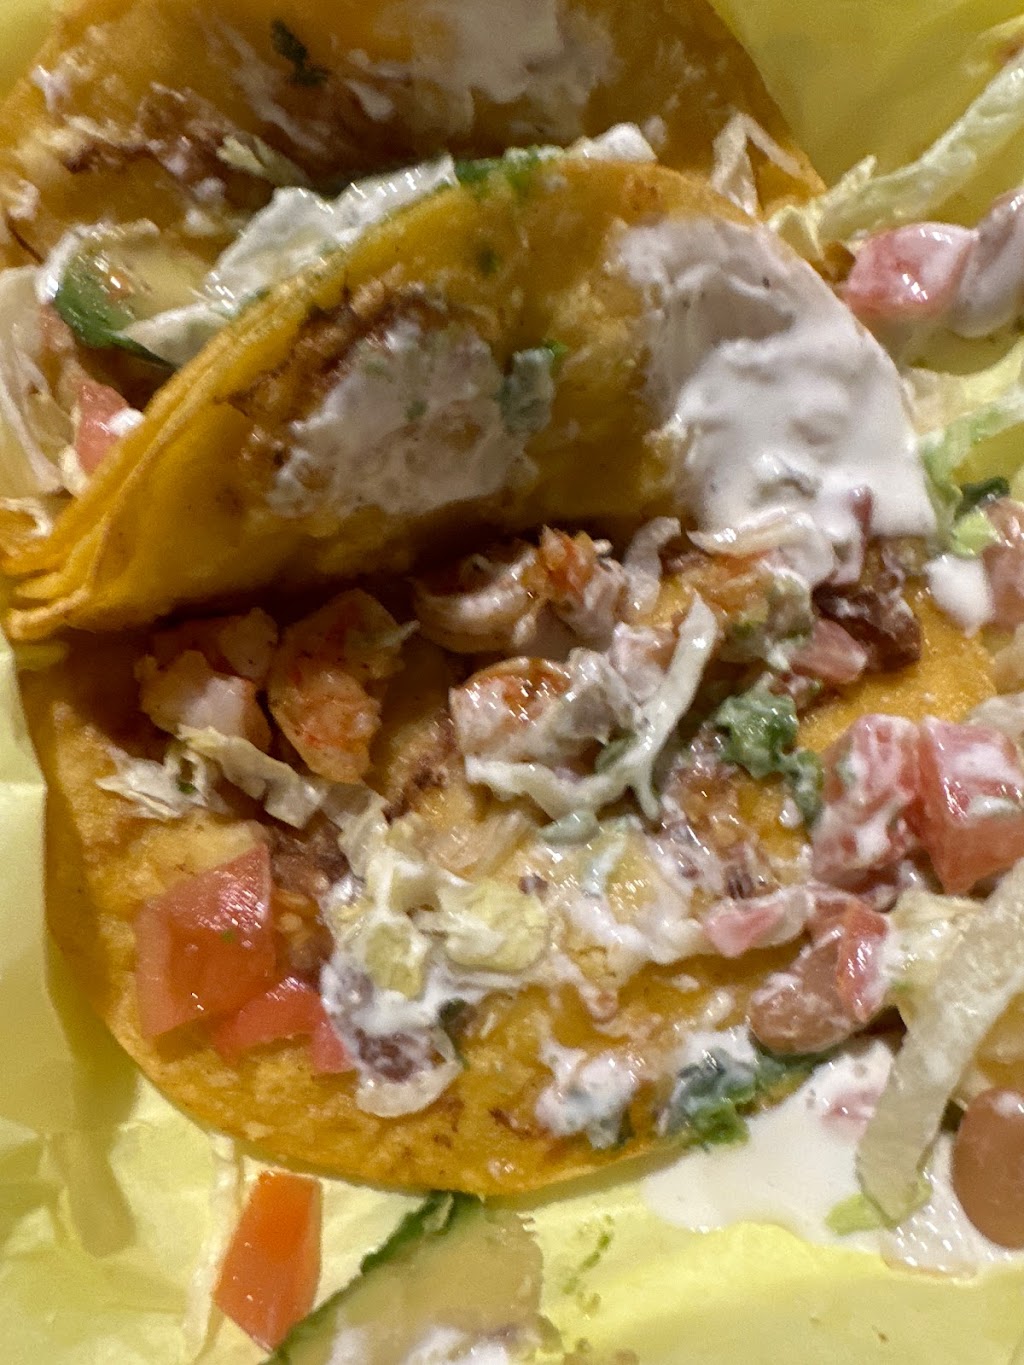 Tacos El Gordito | 10921 Magnolia Blvd, North Hollywood, CA 91601, USA | Phone: (213) 462-8250